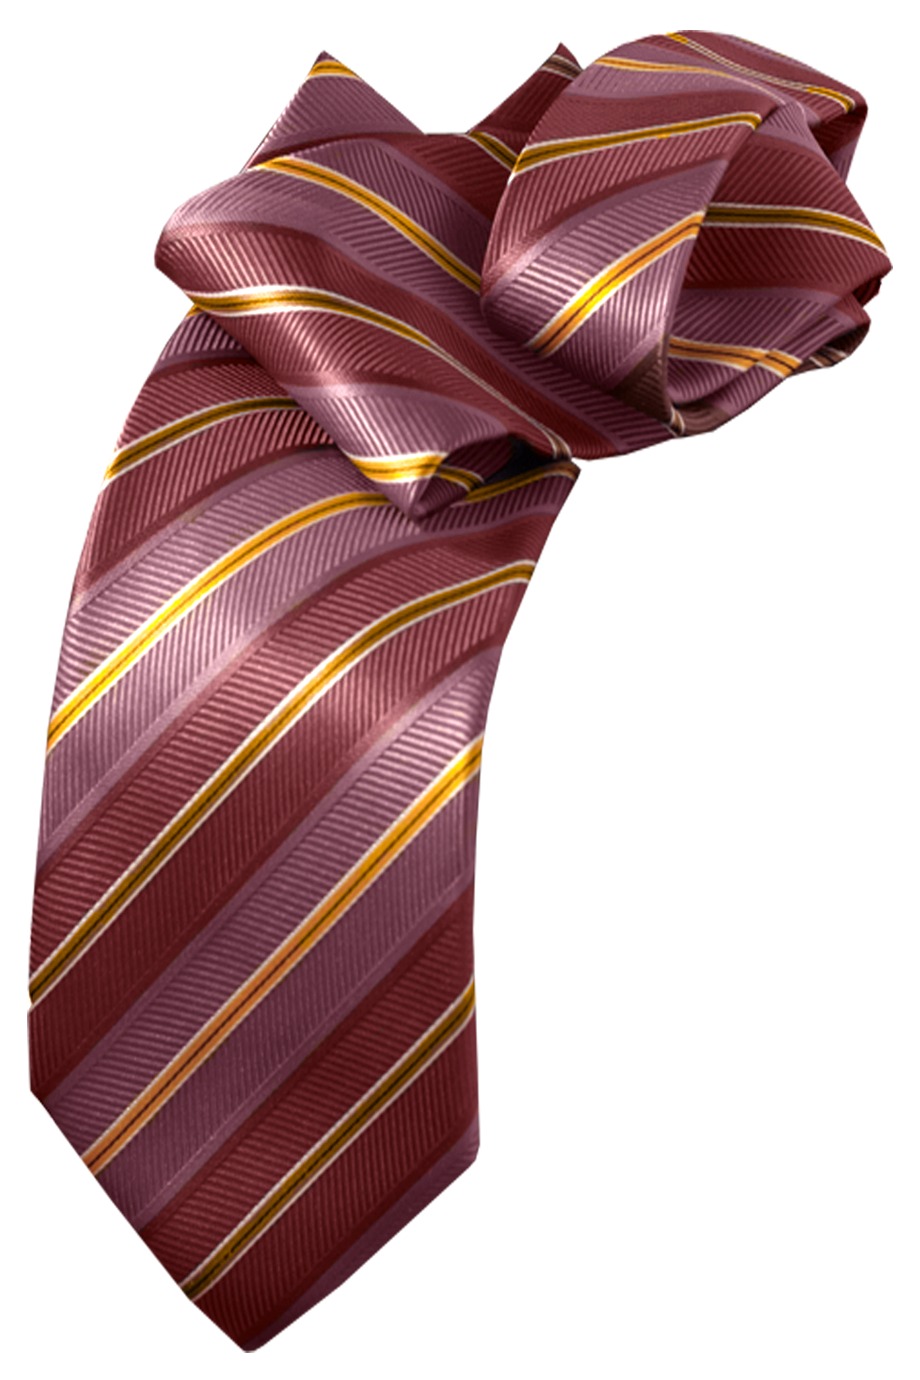 Edwards Garment ST00 - Stripe Tie